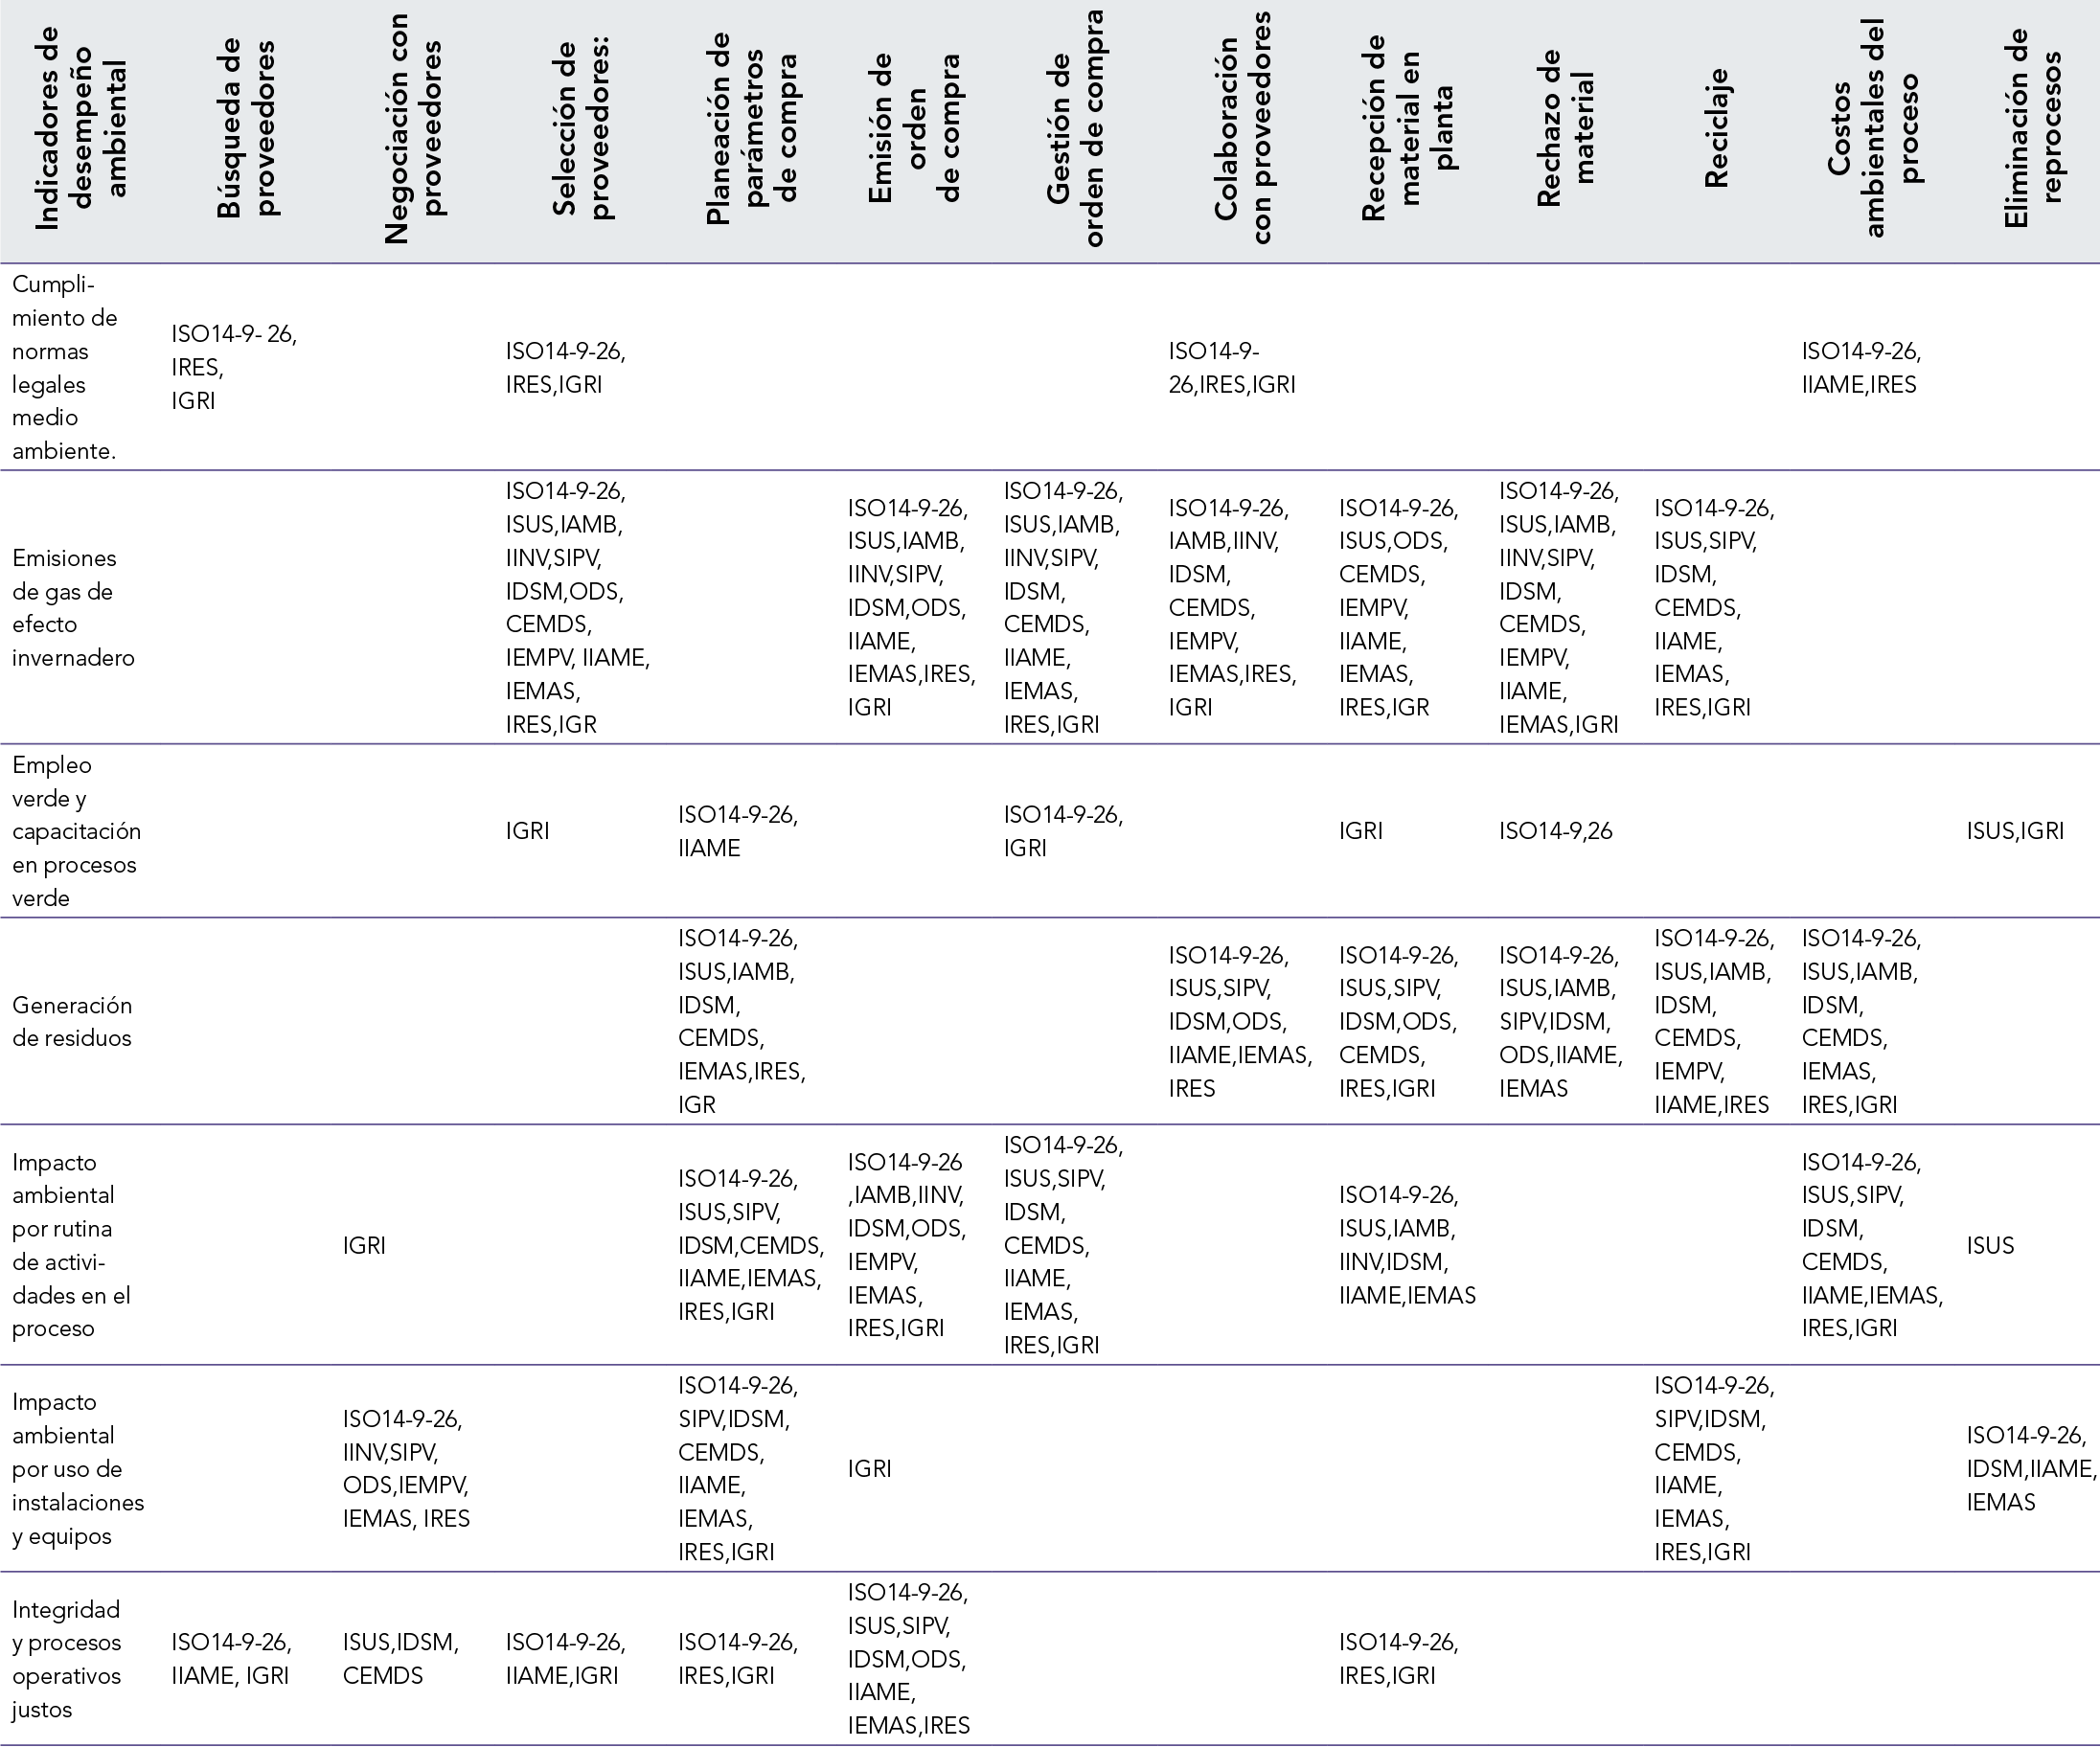 Matriz de relación de indicadores de desempeño de impacto ambiental, con las fases del proceso de abastecimiento